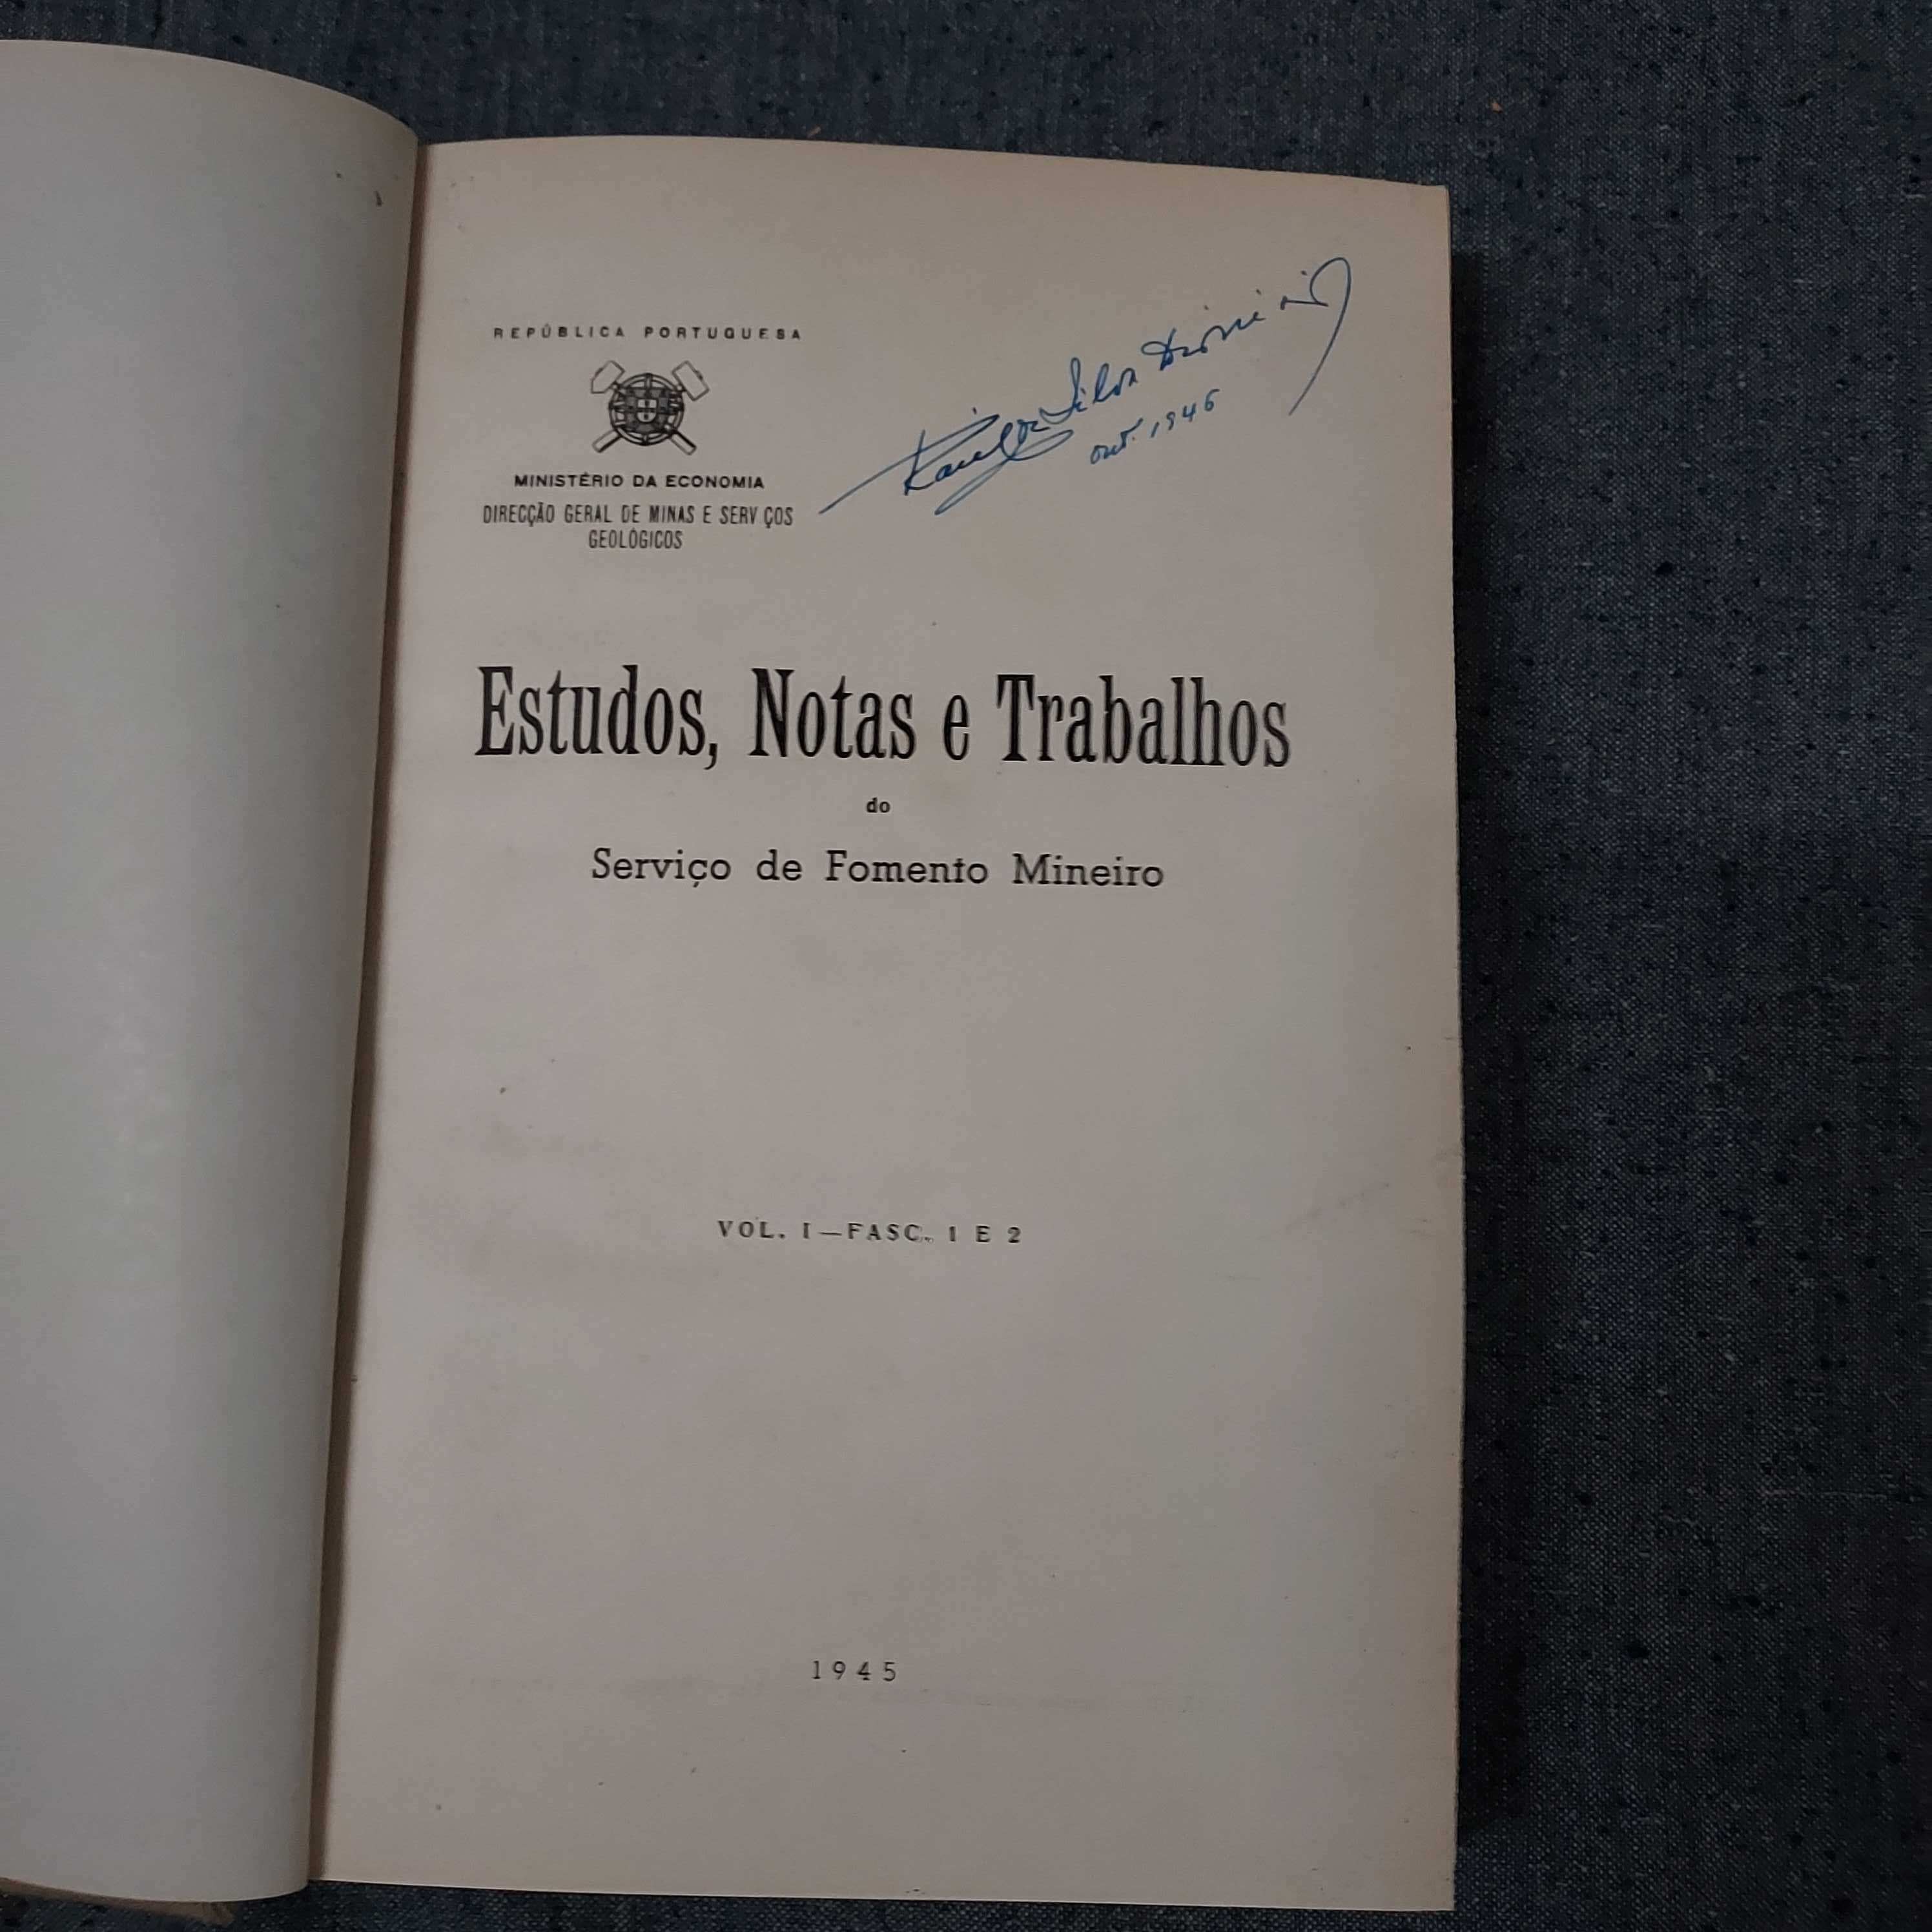 Estudos,Notas e Trabalhos do Fomento Mineiro-11 vs-1945/1956